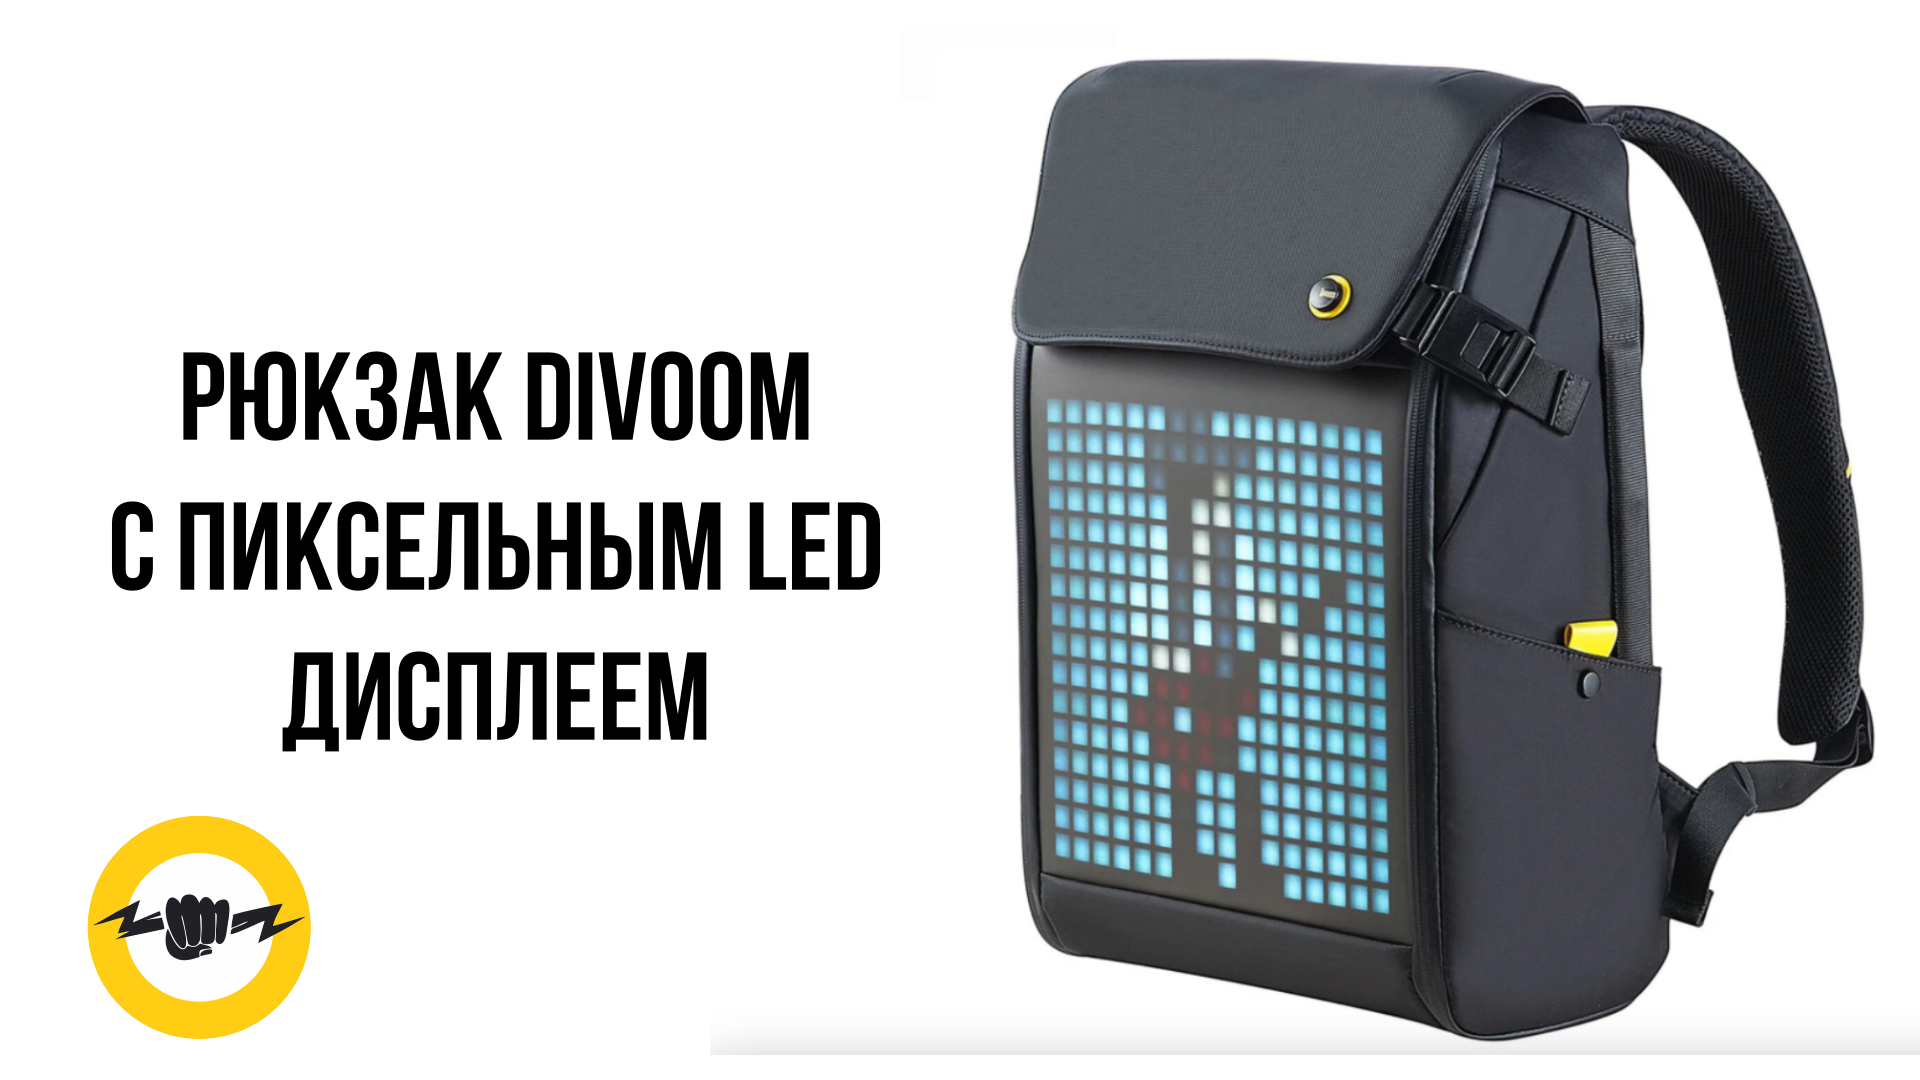 Обзор на Рюкзак Divoom M - с пиксельным LED дисплеем